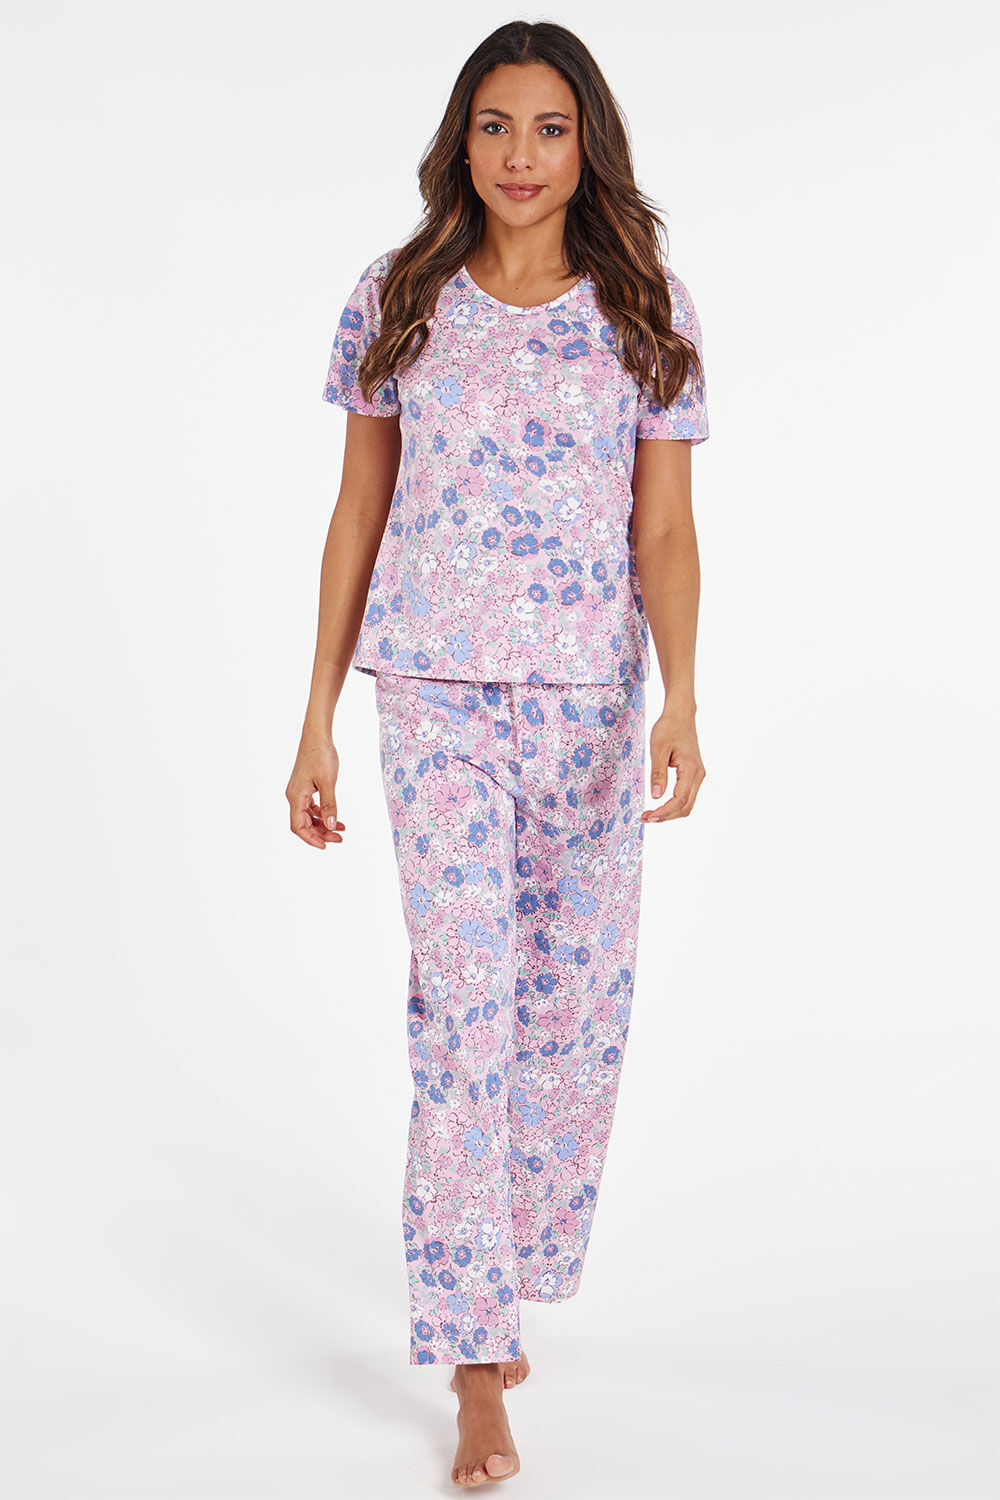 Bonmarche Pink Short Sleeve All Over Floral Print Pyjama Set, Size: 12-14